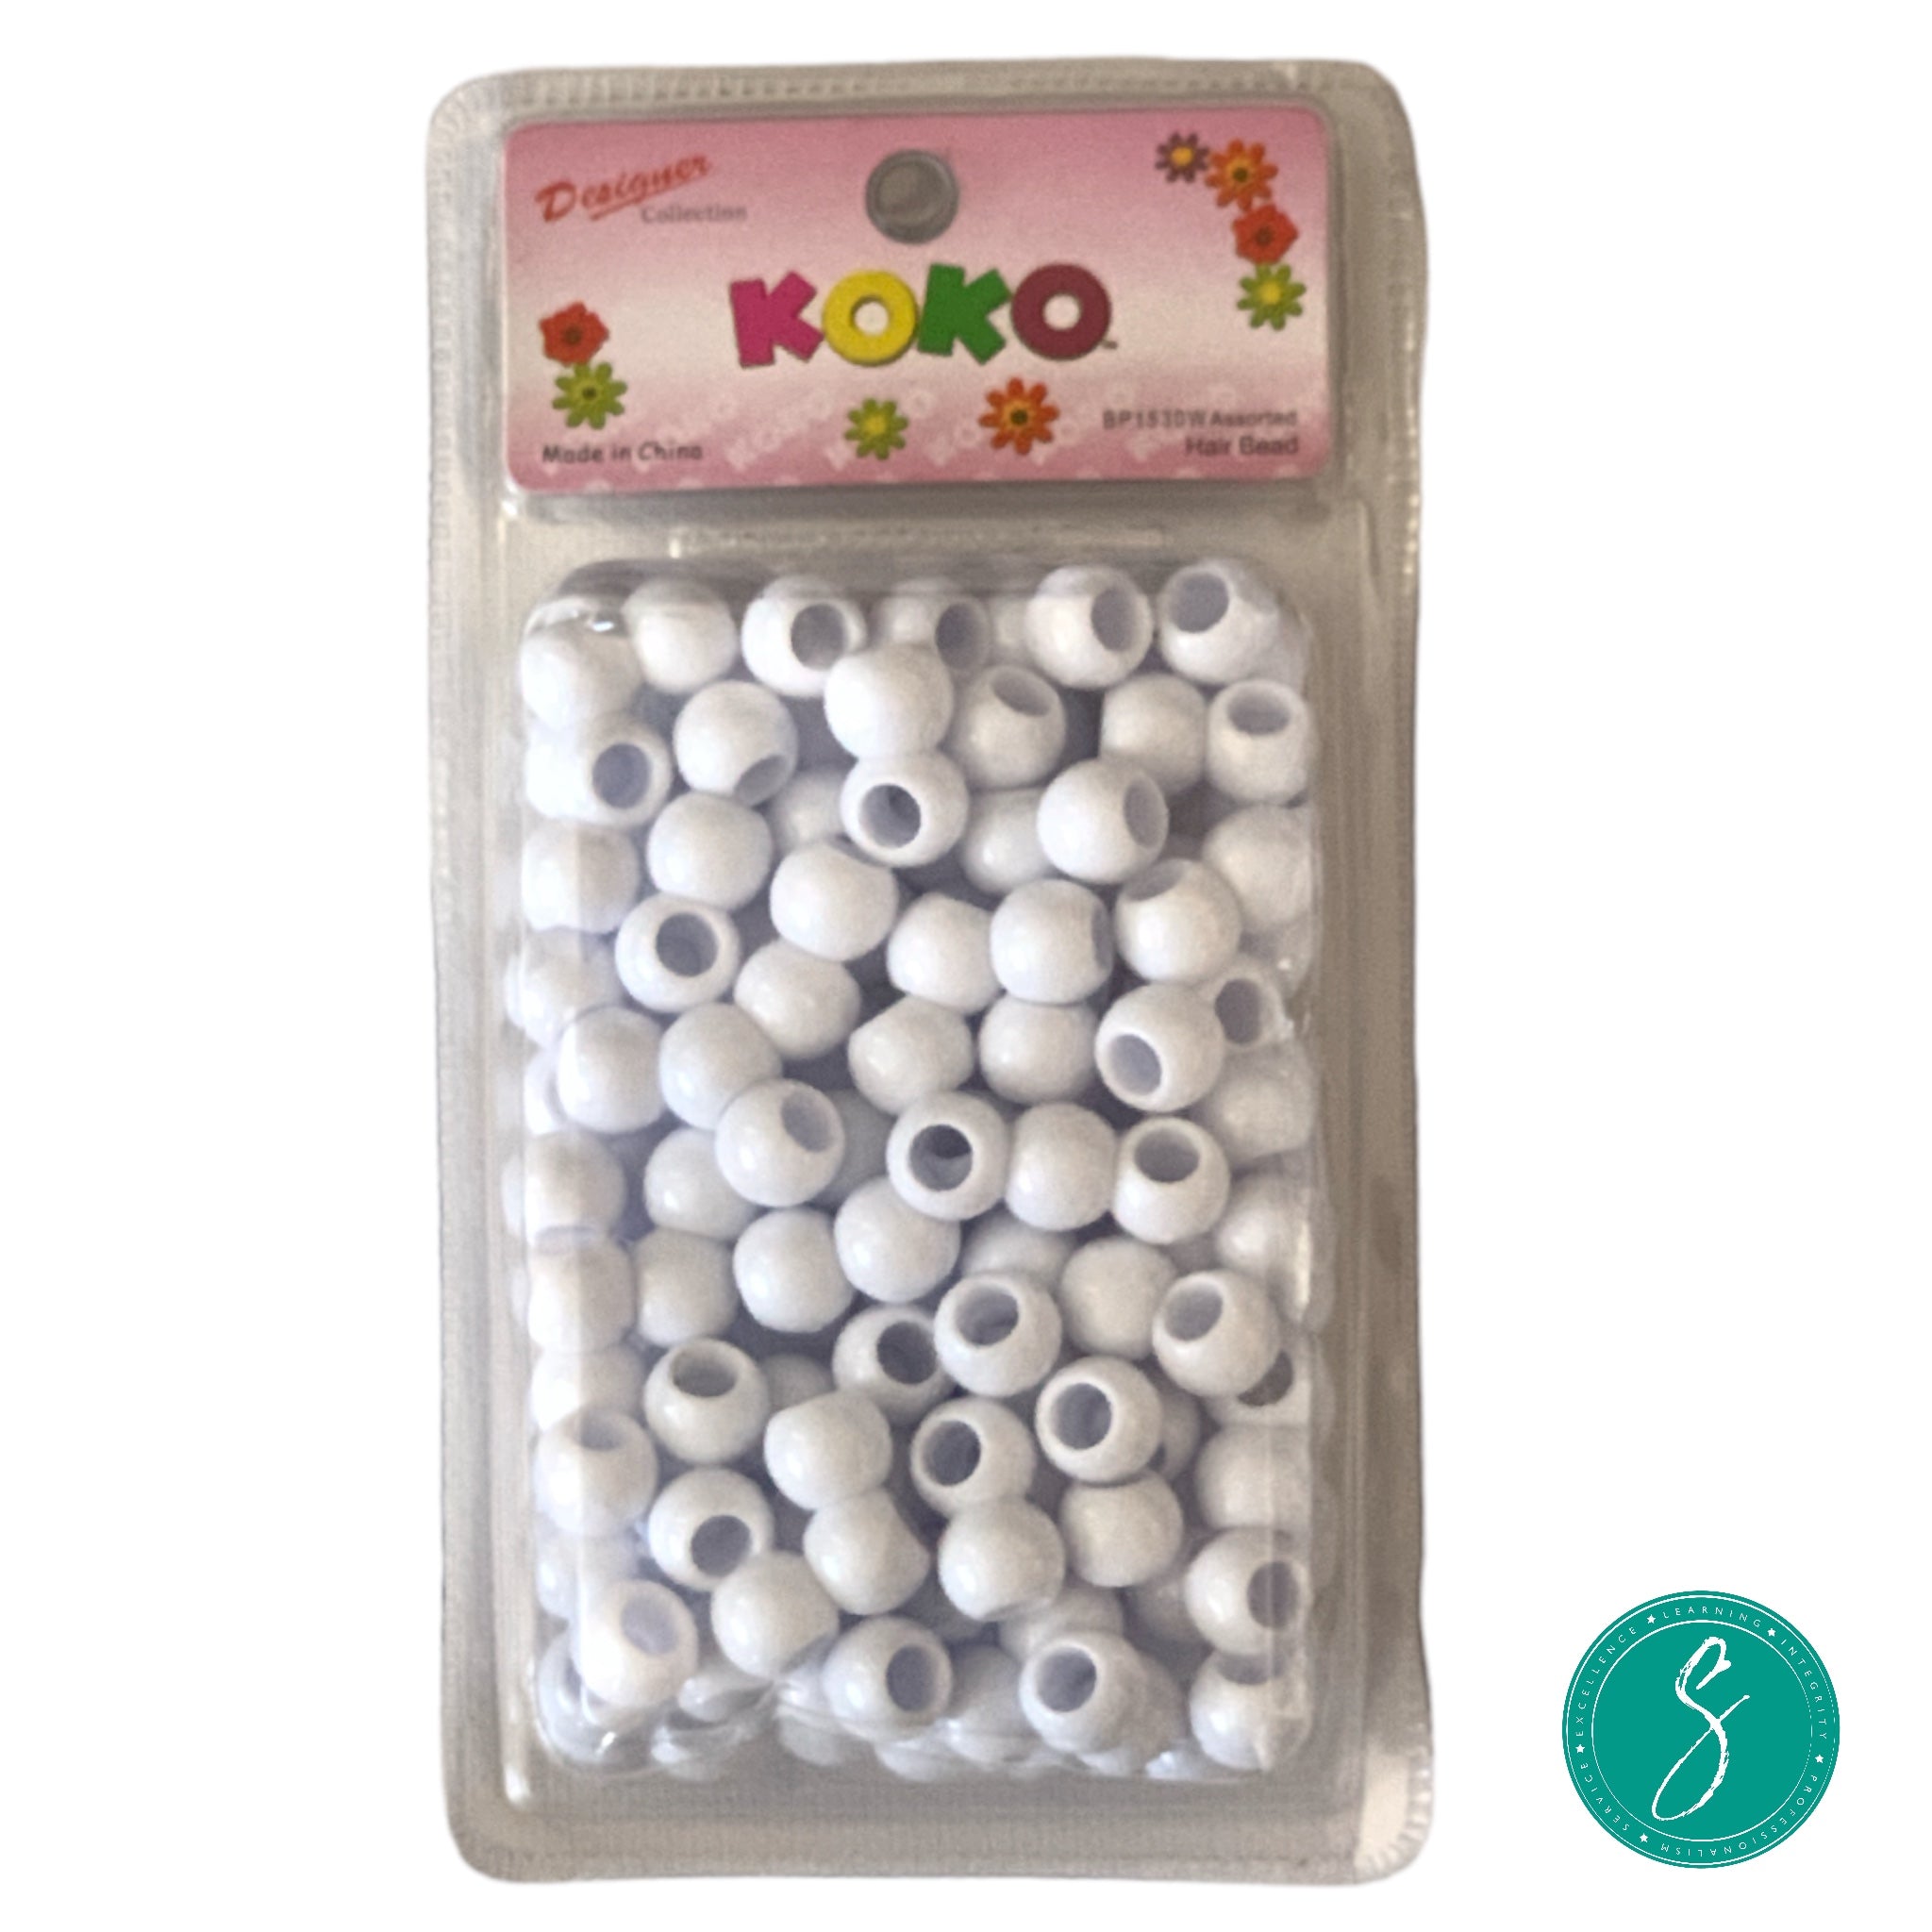 Koko Hair Beads - Large - White